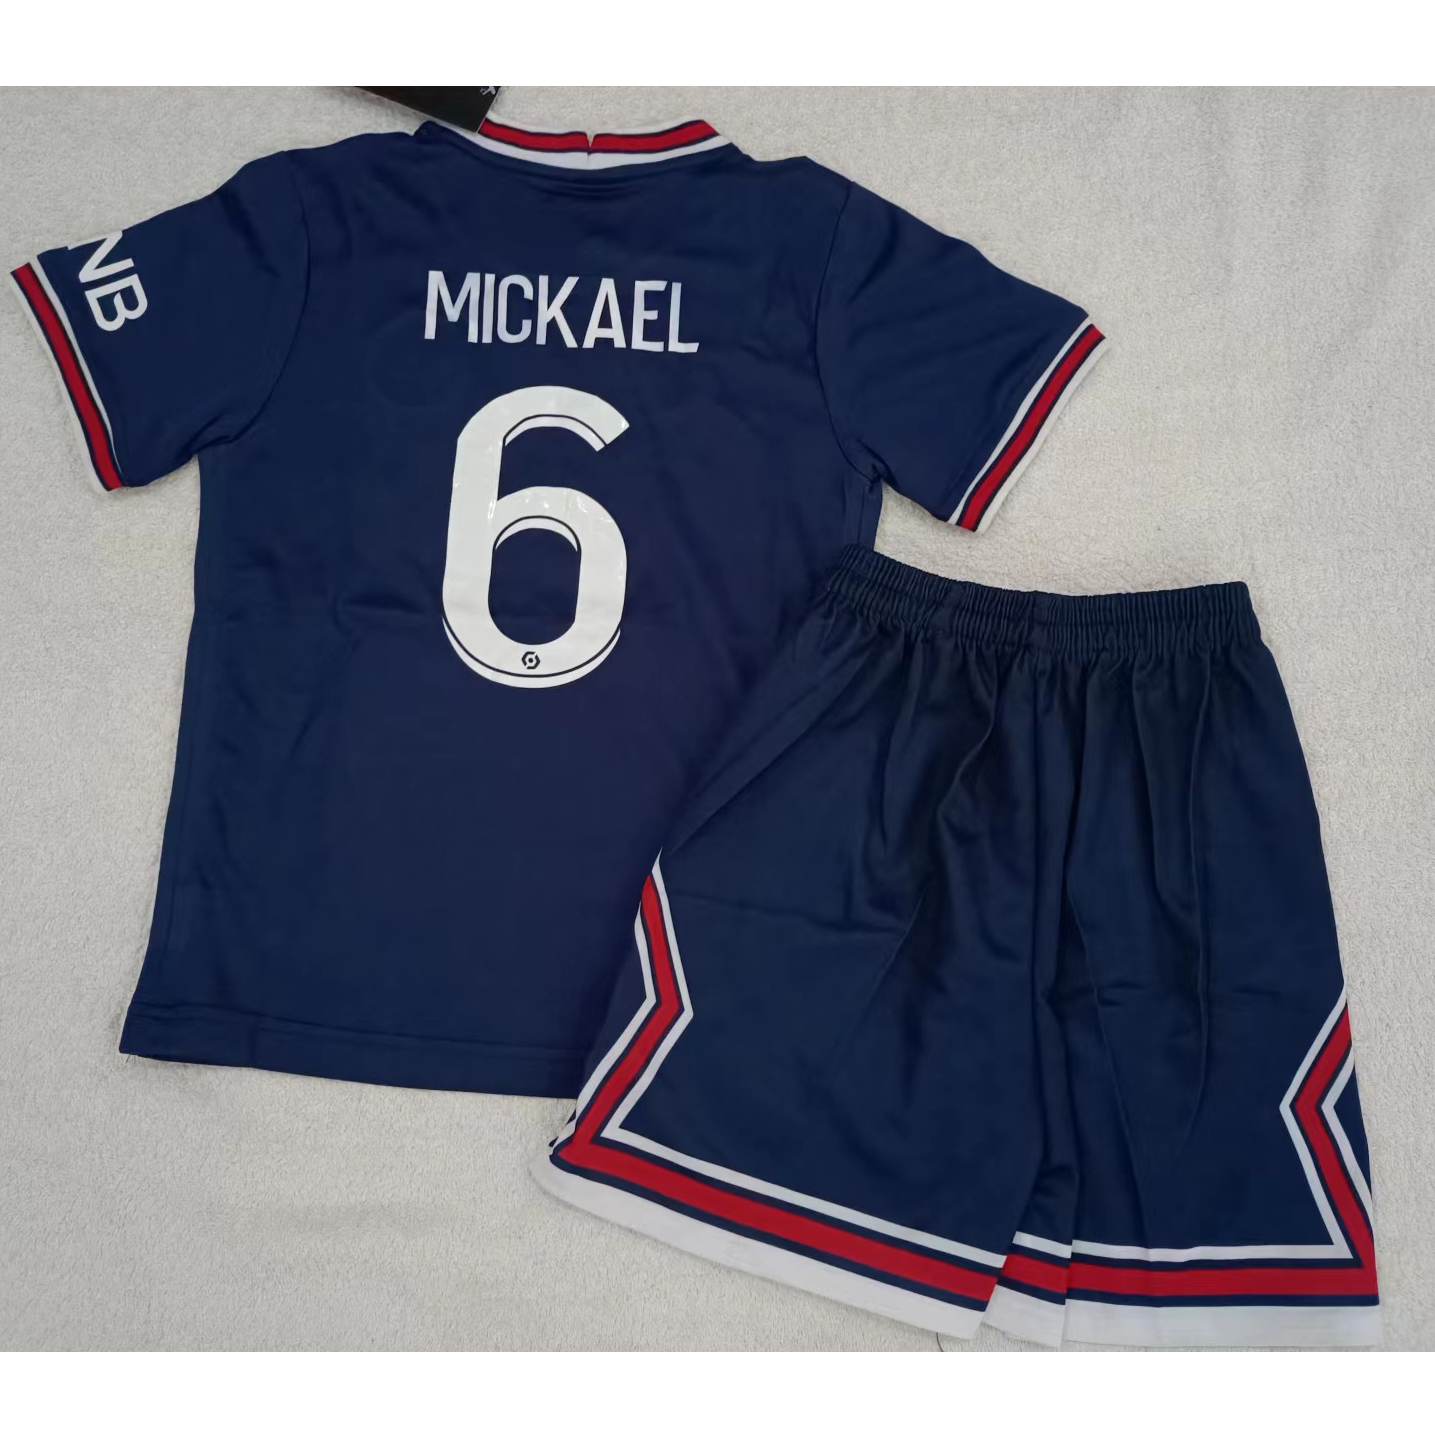 max maillots produits à prix réduits 2302115 Enfant Paris Saint Germain MICKAEL 6 Taille 20 Bleu